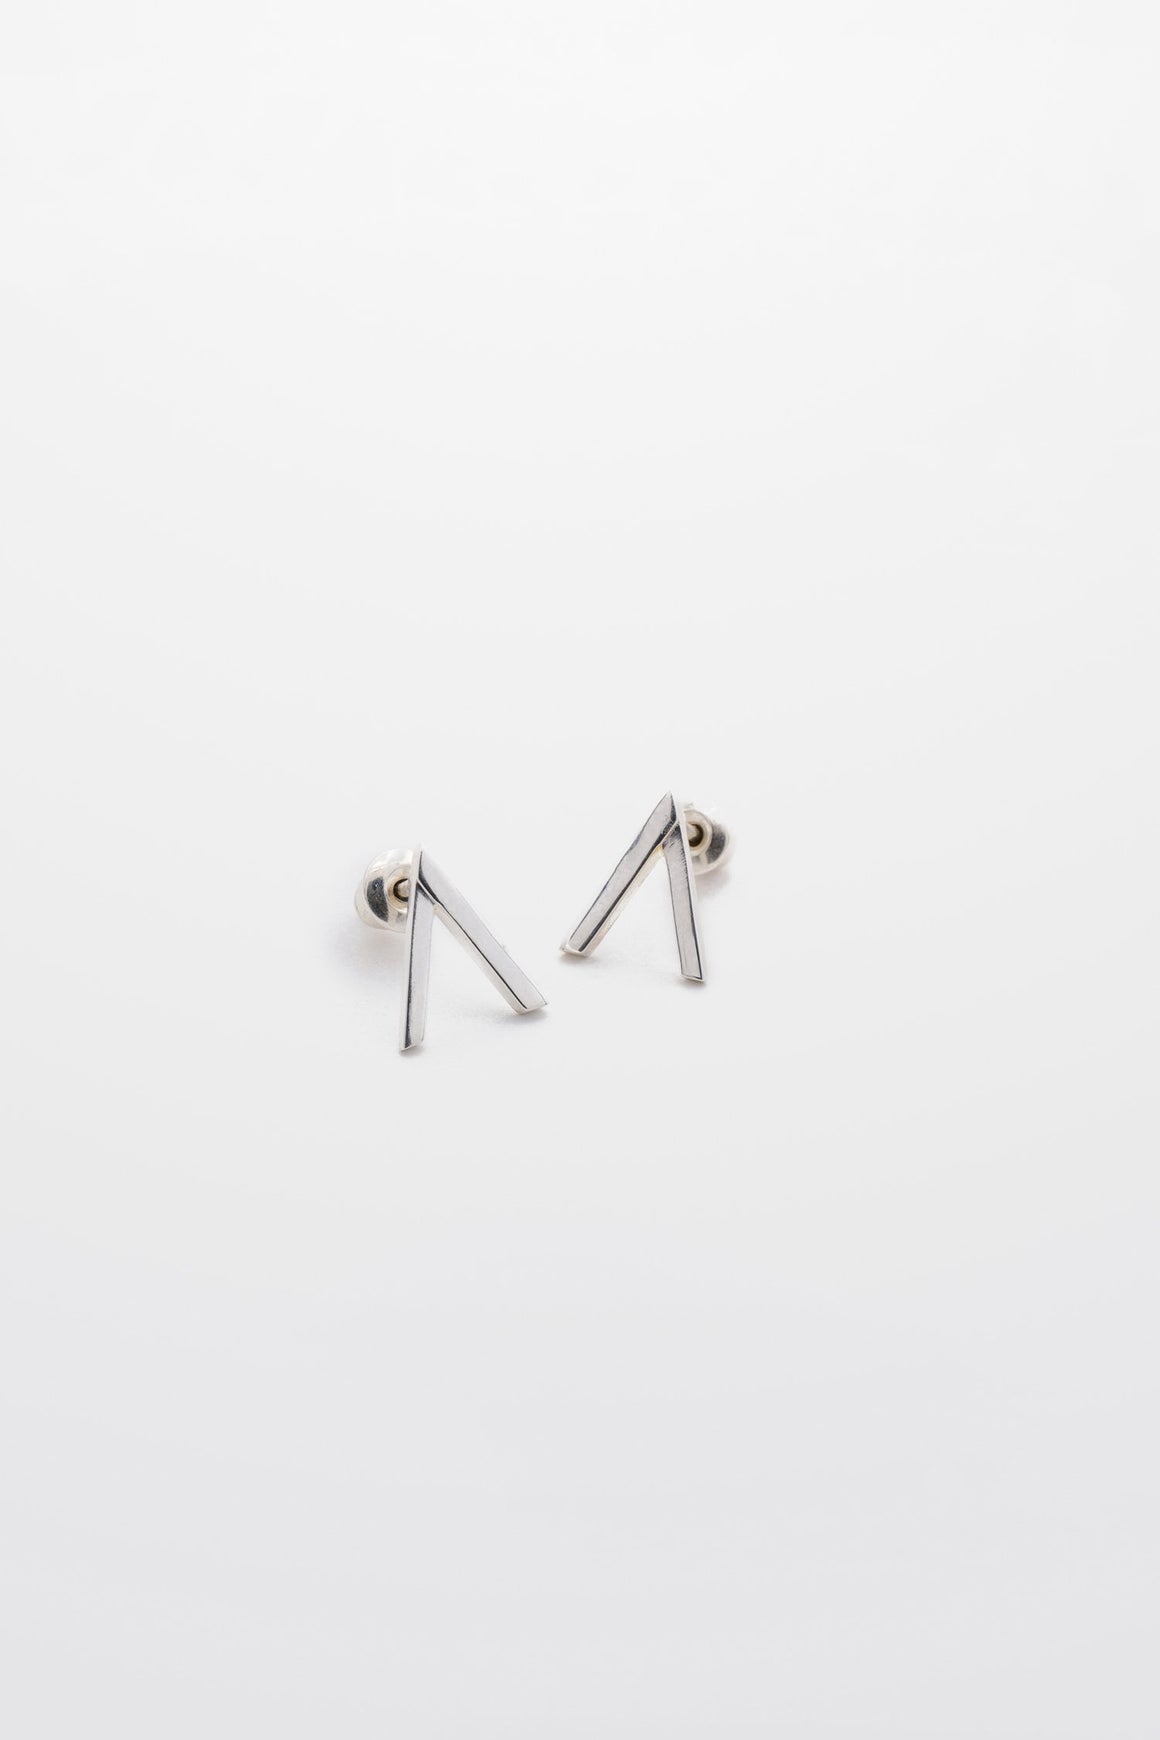 Tutti & Co Lia Silver Ear-rings